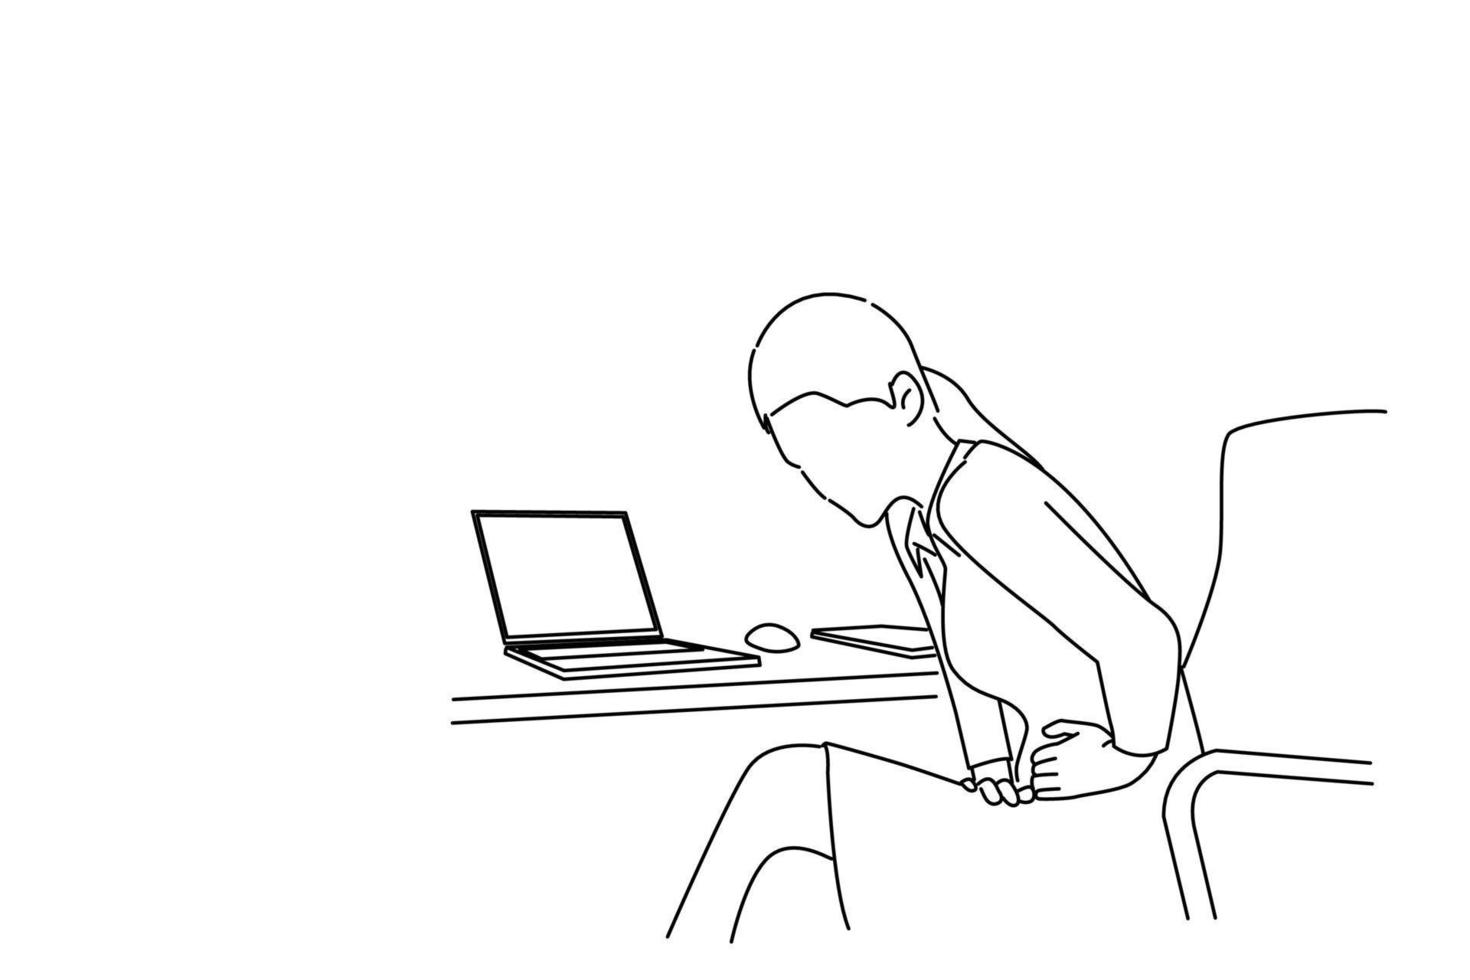 Zeichnung einer Managerin, die am Tisch sitzt, sich beugt, ihren Bauch berührt und unter Schmerzen leidet. Umrisszeichnungsstil Kunst vektor